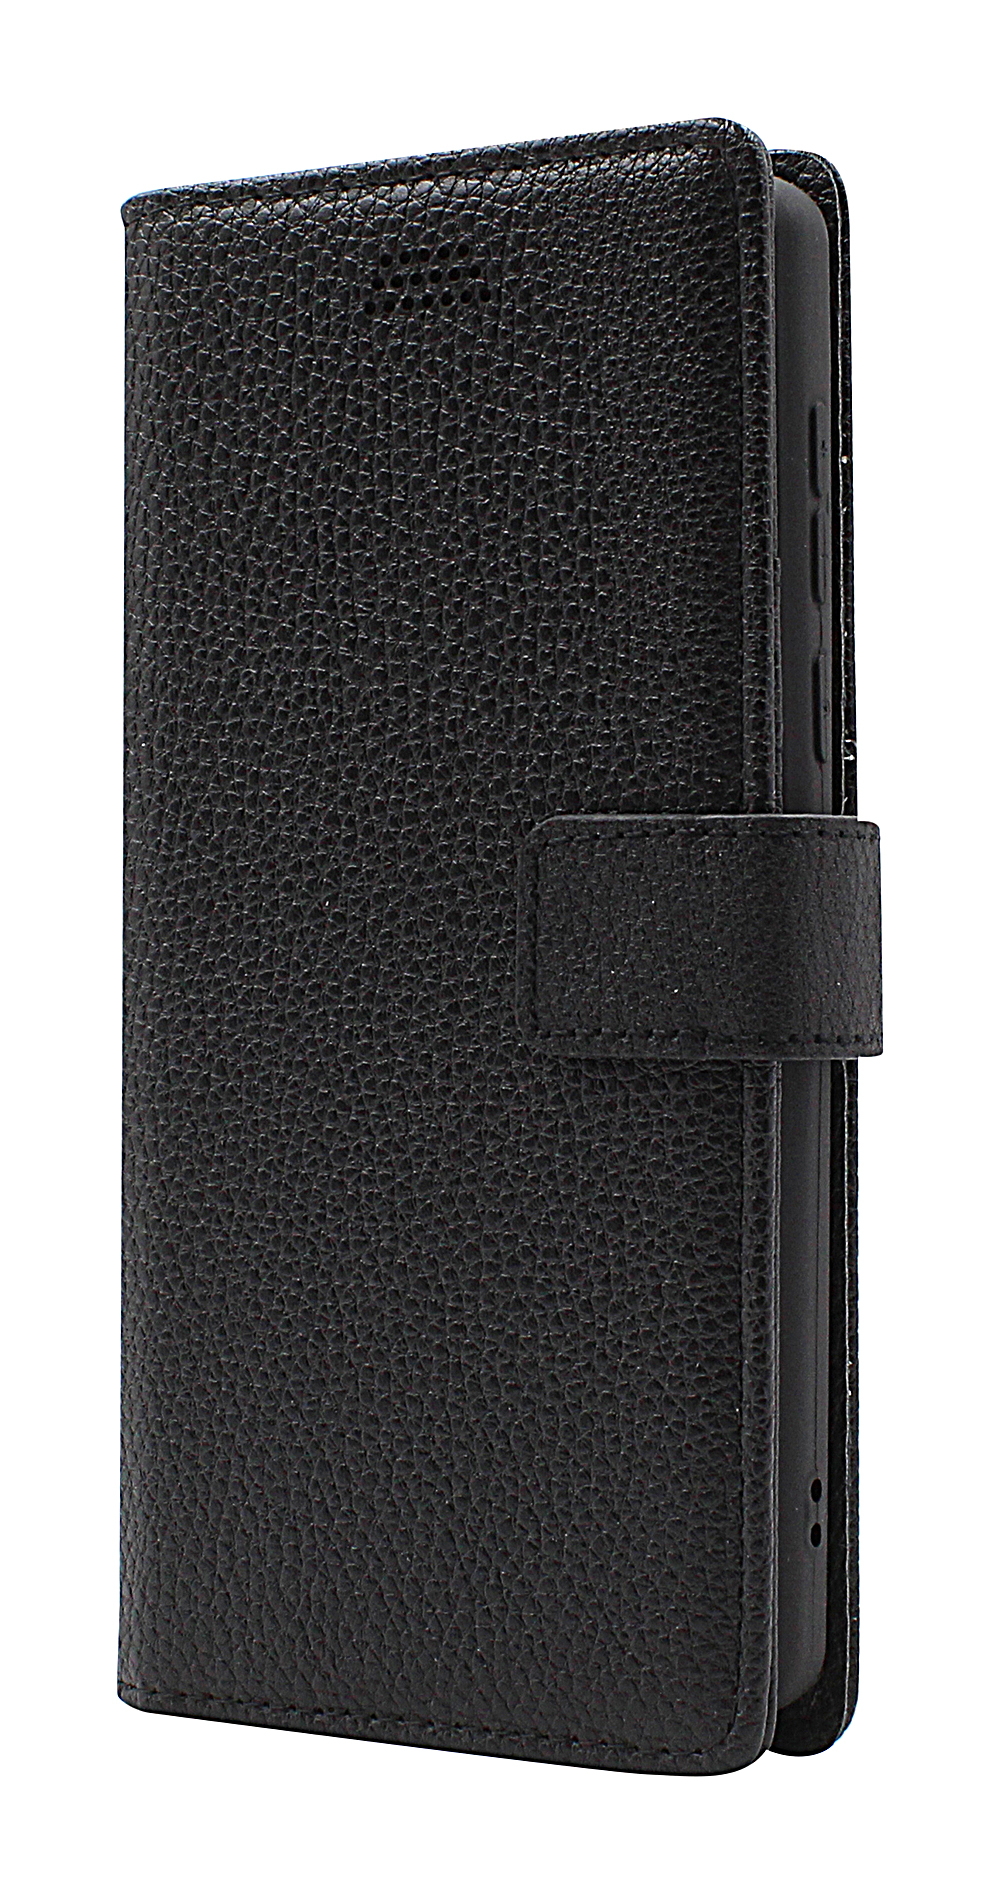 billigamobilskydd.seNew Standcase Wallet Sony Xperia 10 V 5G